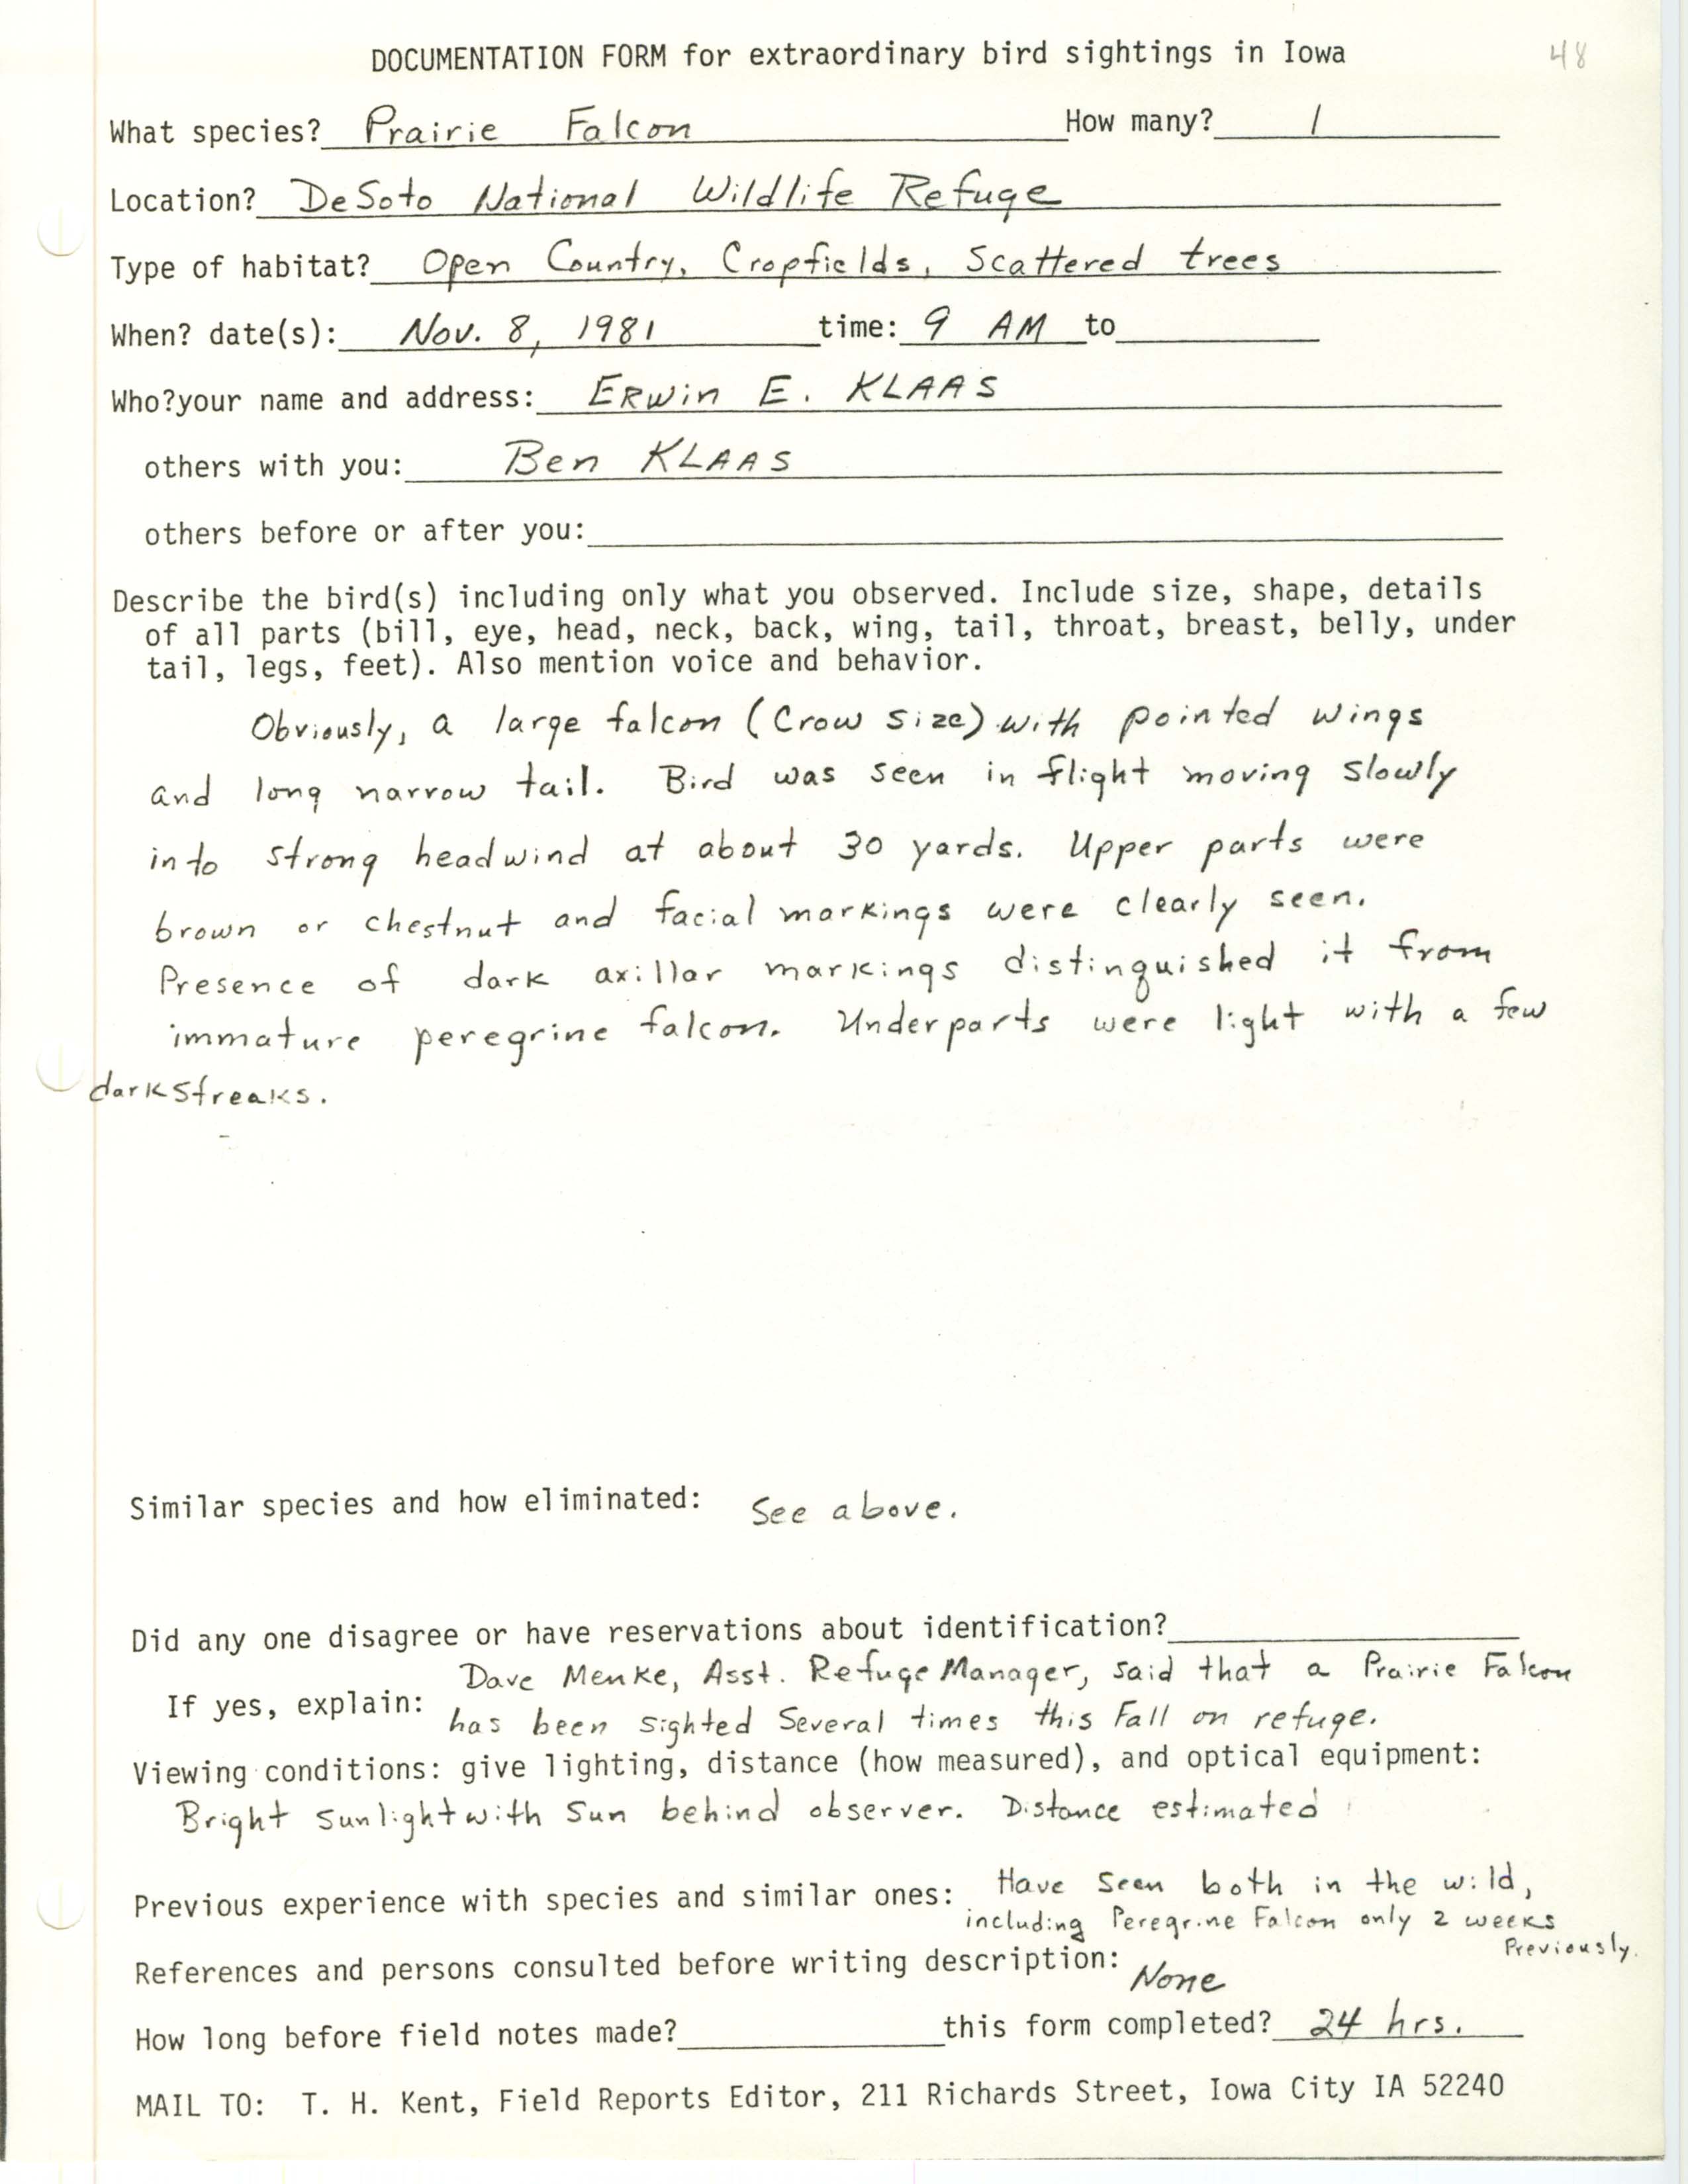 Rare bird documentation form for Prairie Falcon at DeSoto National Wildlife Refuge, 1981